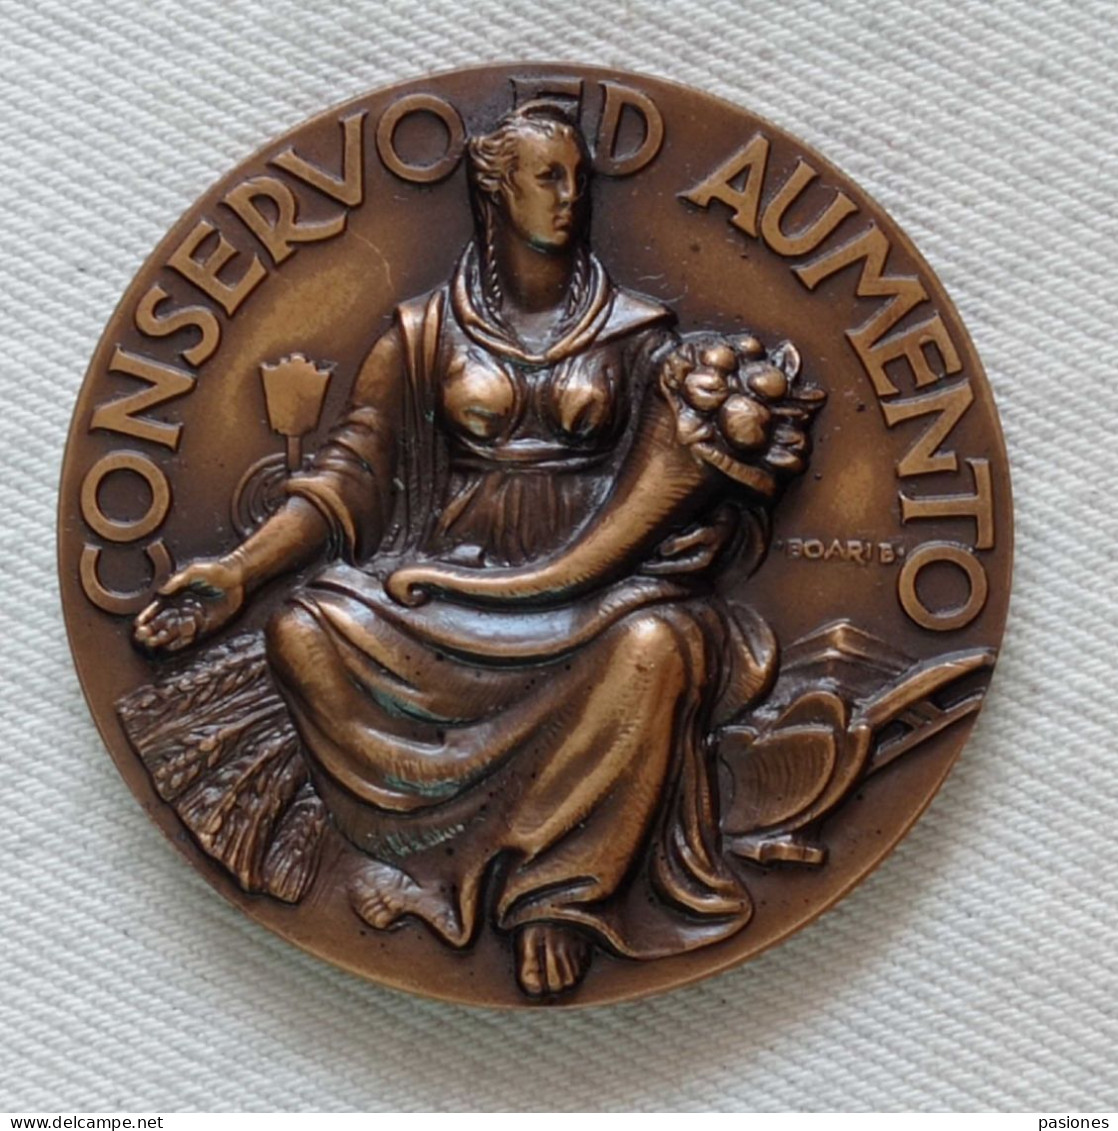 Medaglia Centenario Della Cassa Di Risparmio In Bologna (1837-1937)  Q.FDC - Profesionales/De Sociedad